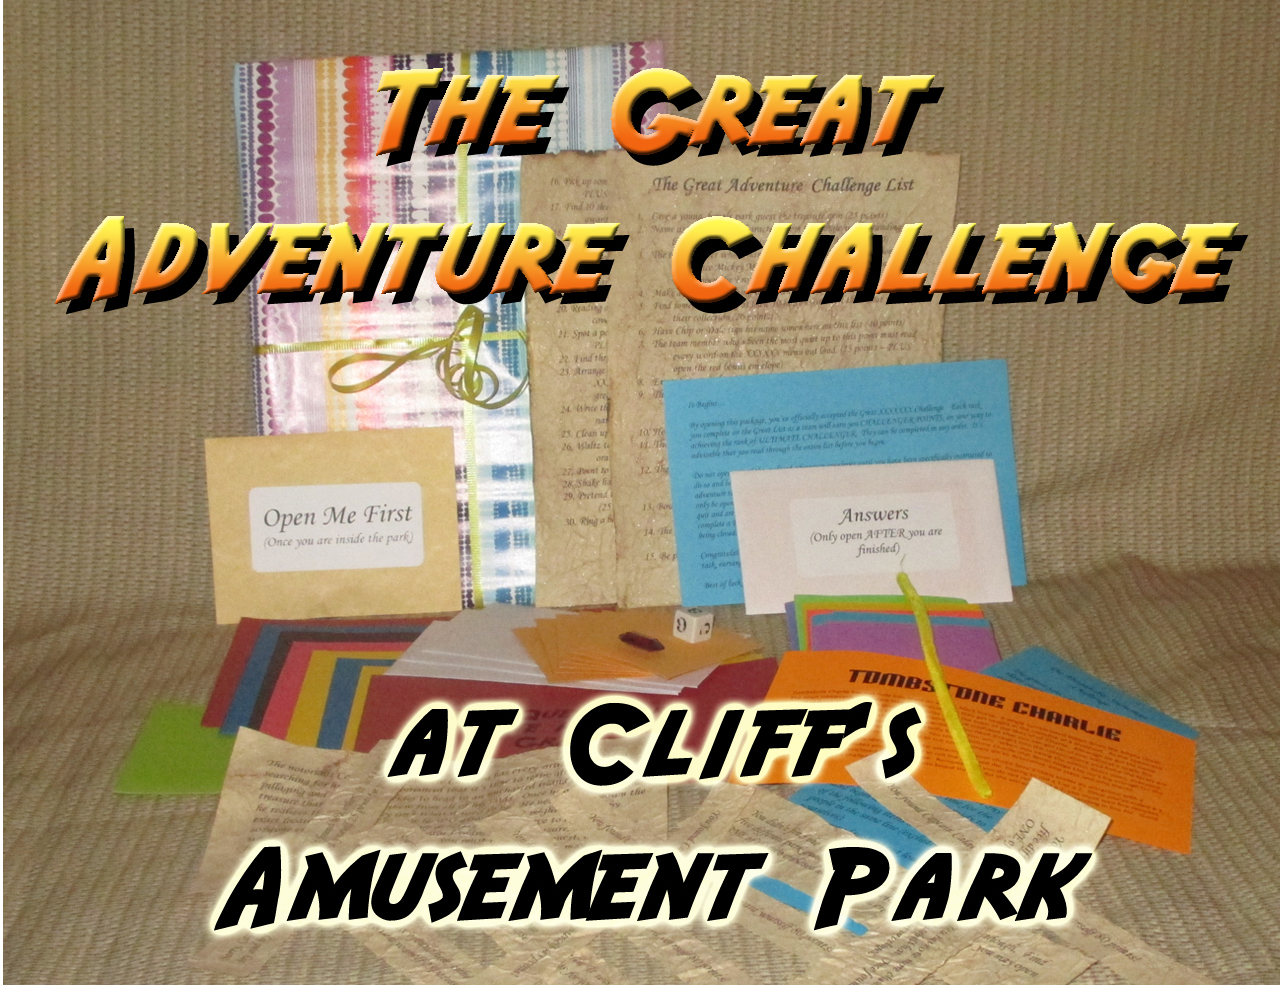 cliffs amusement park scavenger hunt